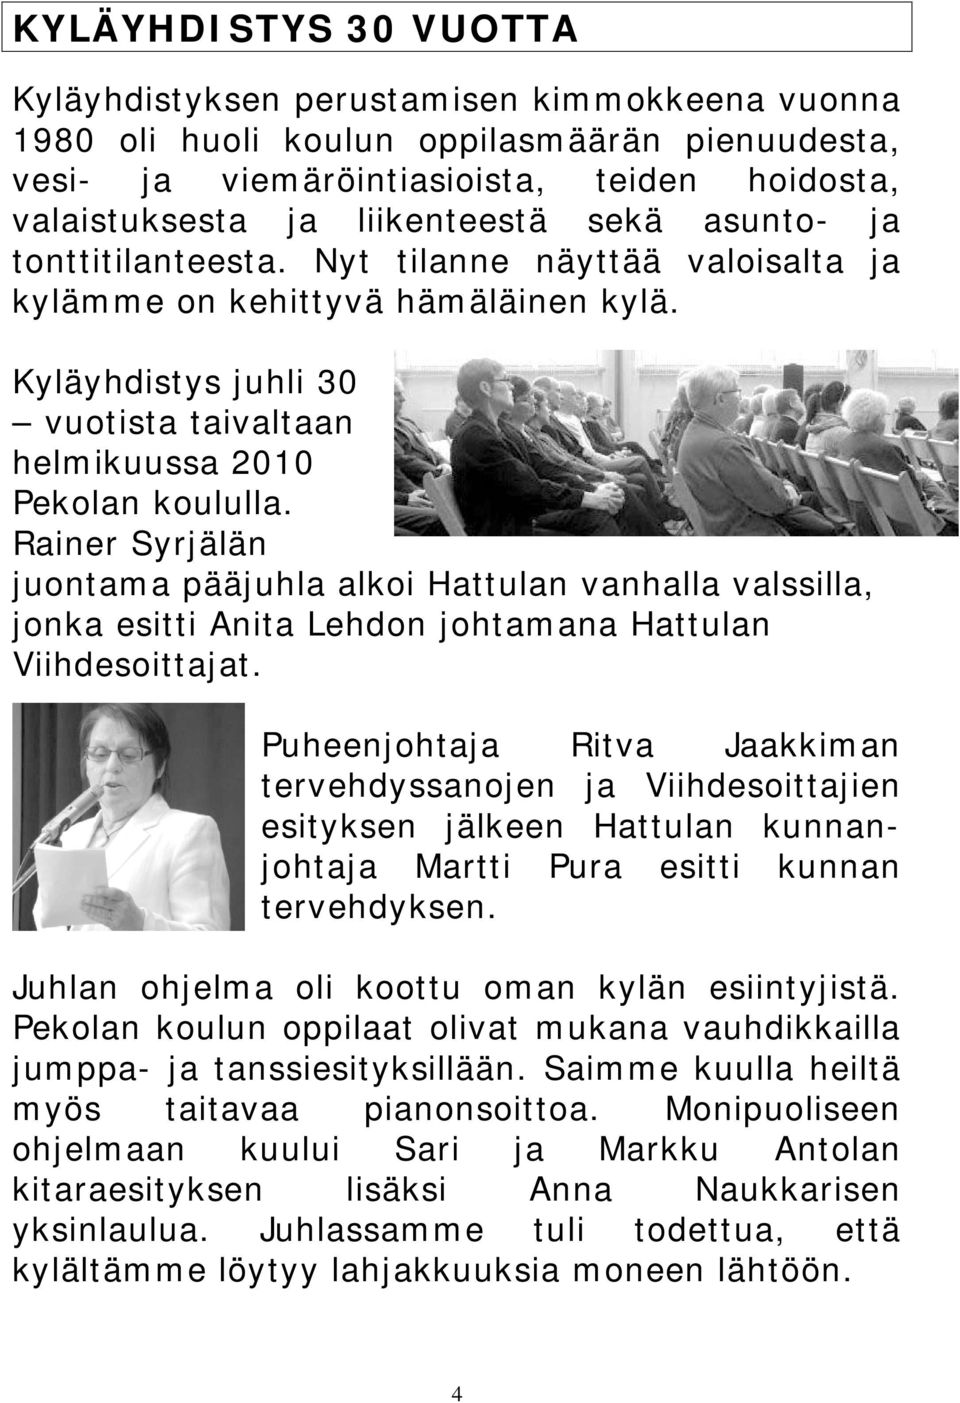 Rainer Syrjälän juontama pääjuhla alkoi Hattulan vanhalla valssilla, jonka esitti Anita Lehdon johtamana Hattulan Viihdesoittajat.